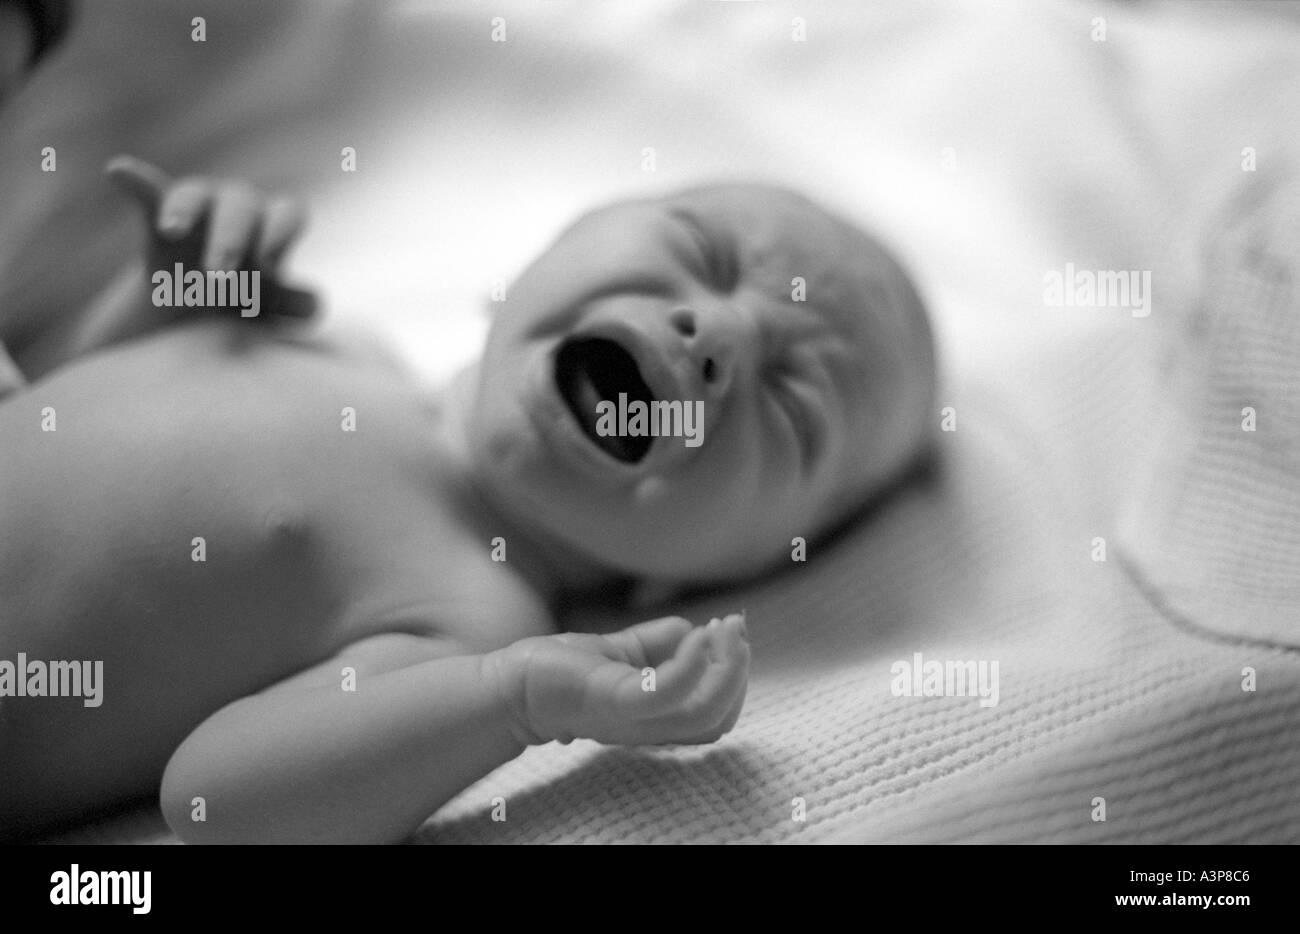 Crying newborn baby Stock Photo